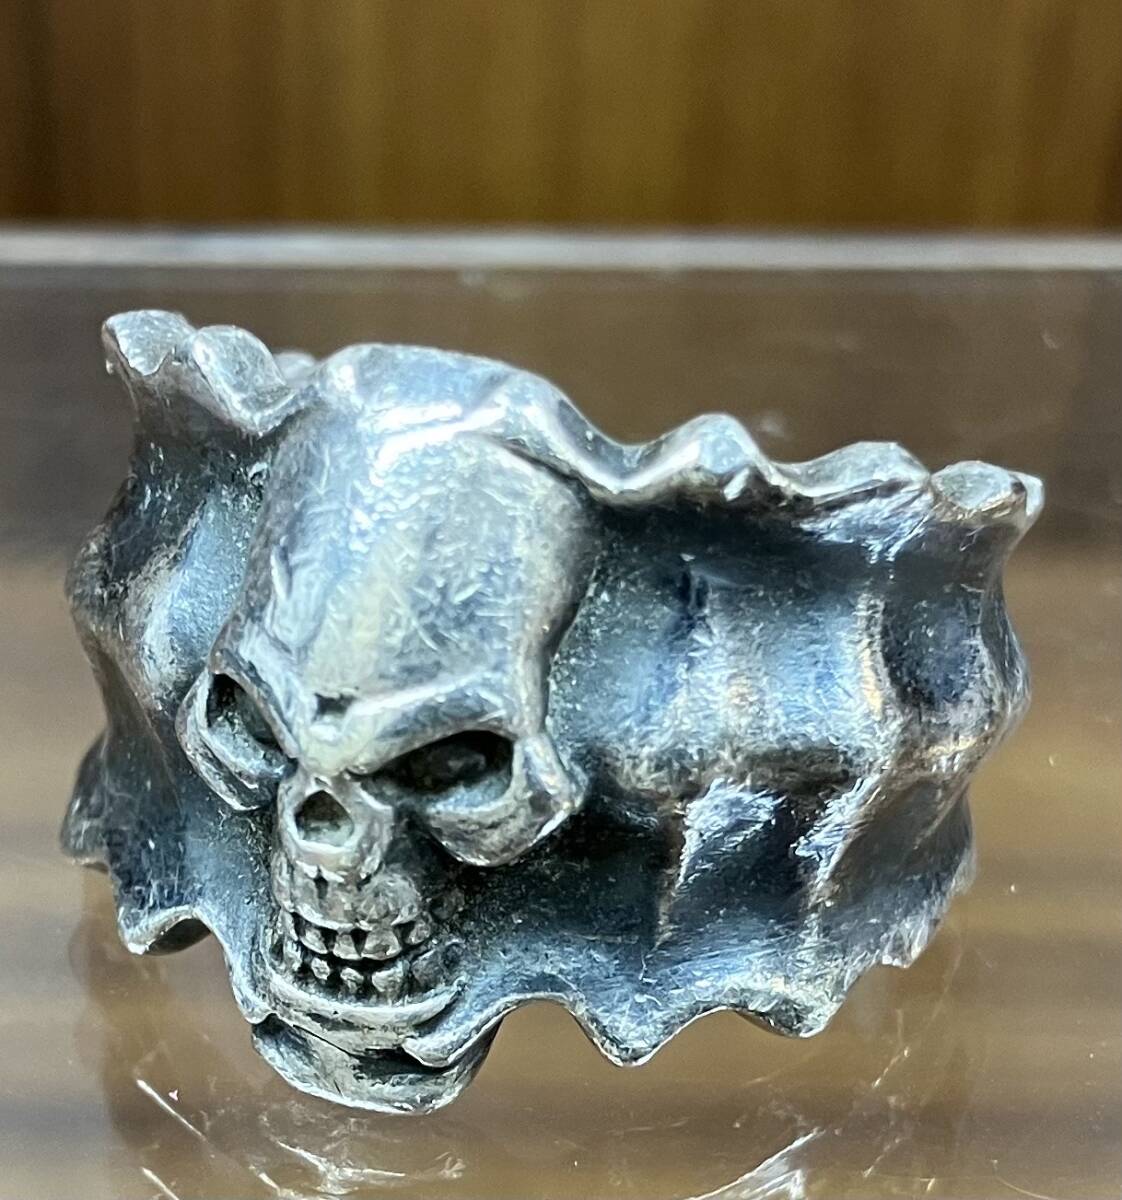  серебряный Skull кольцо SV 925 кольцо каркас мужской 21.5 номер 